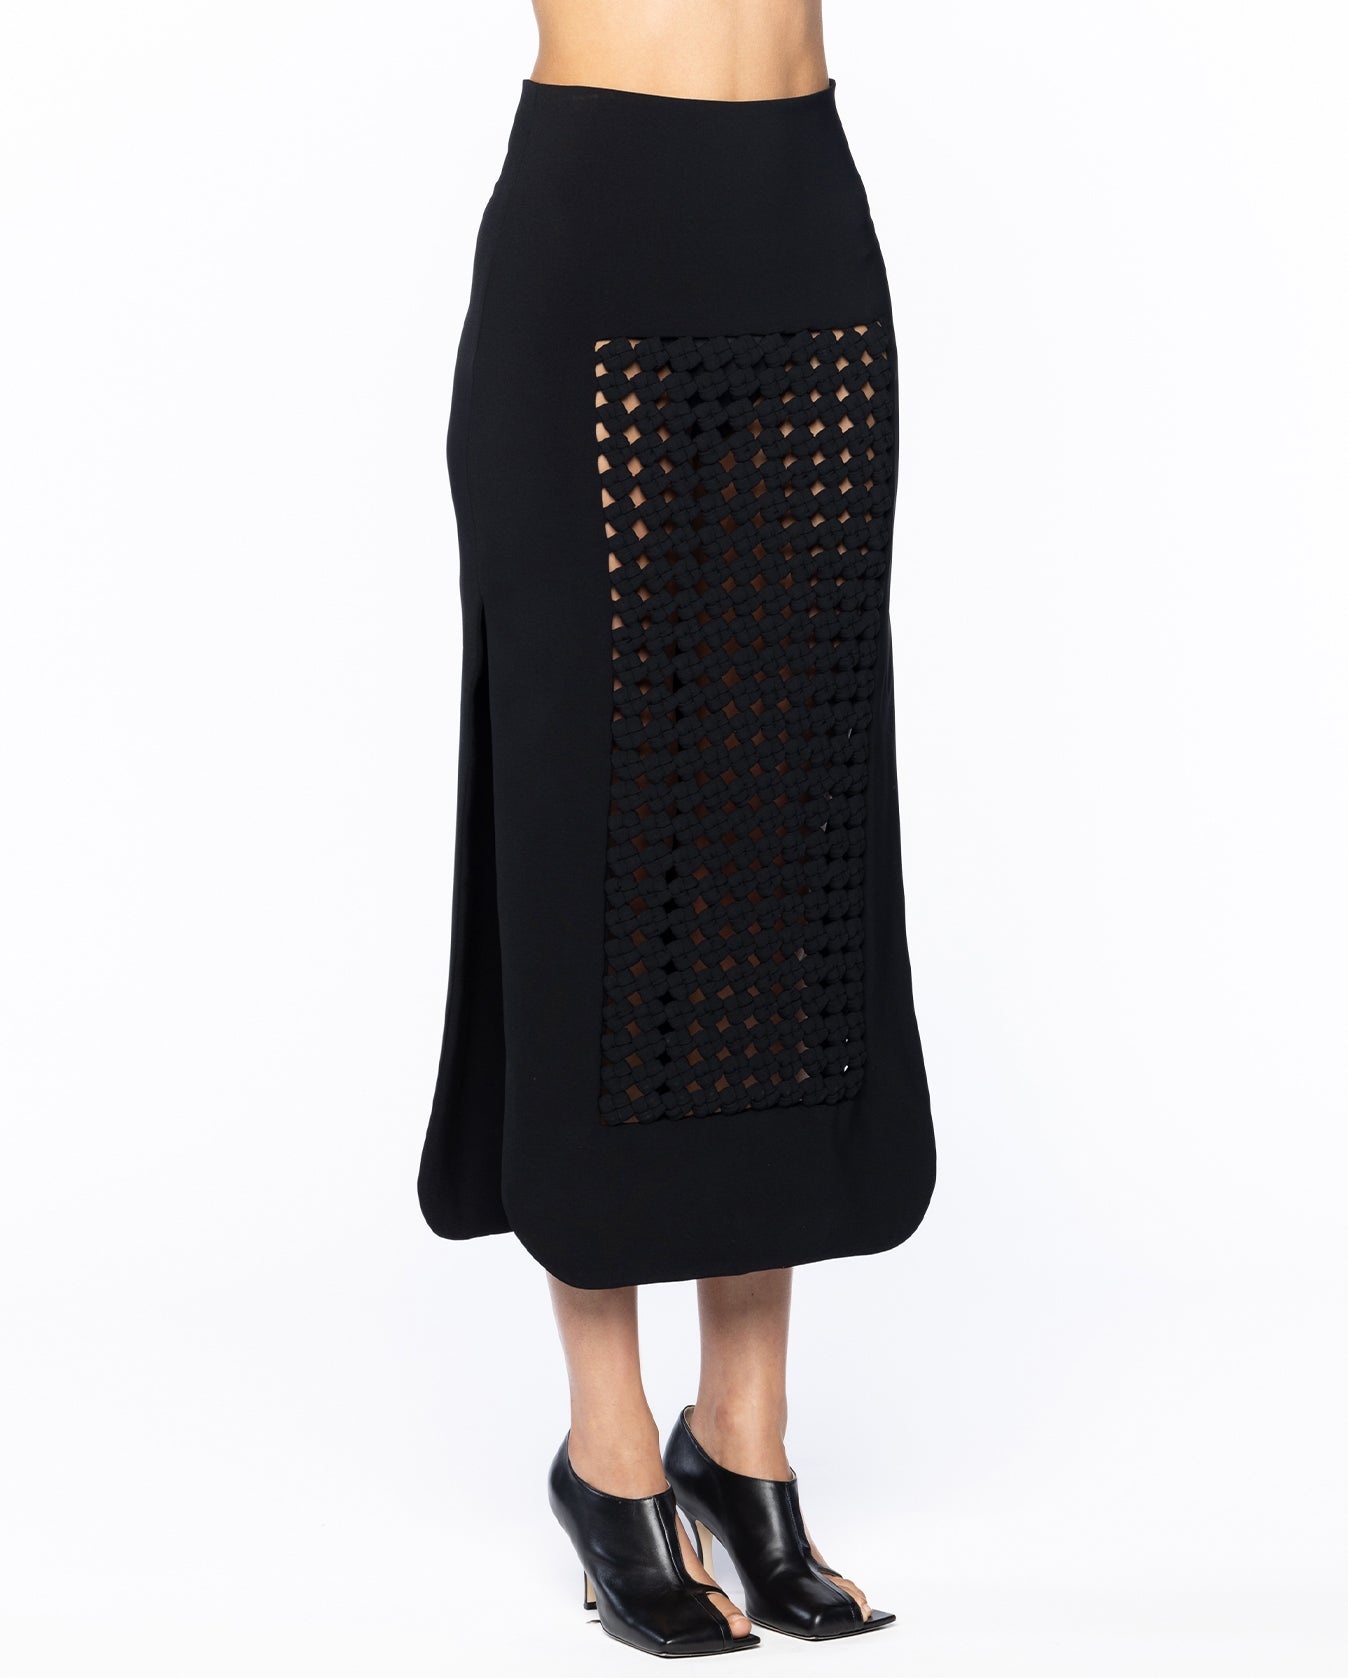 Maxi Skirt With Weaved Frame Insert - 5